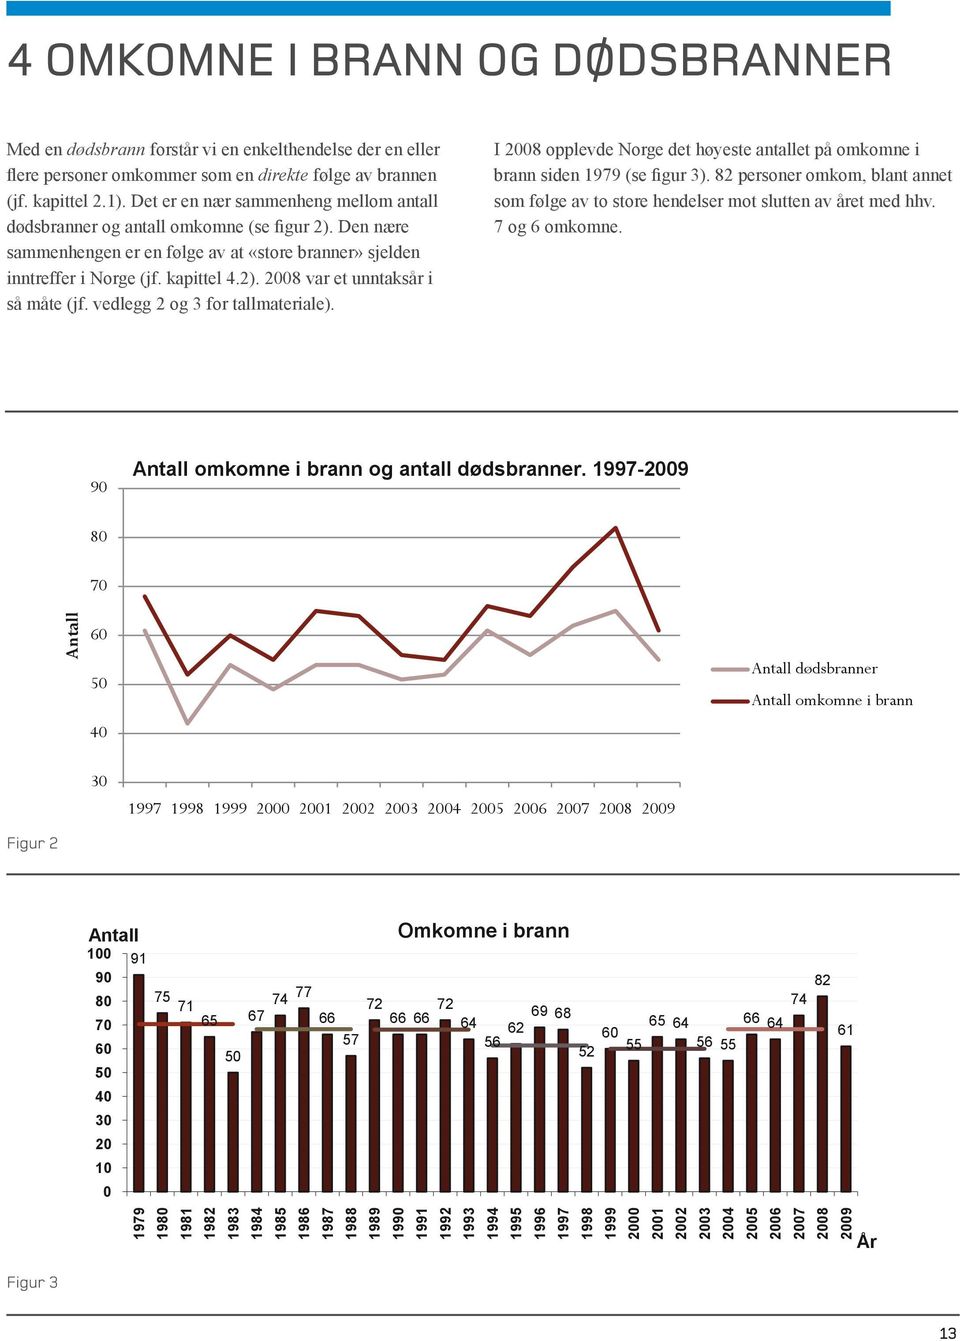 Figur vedlegg 2: 2 og 3 for tallmateriale). I 2008 opplevde Norge det høyeste antallet på omkomne i brann siden 1979 (se figur 3).